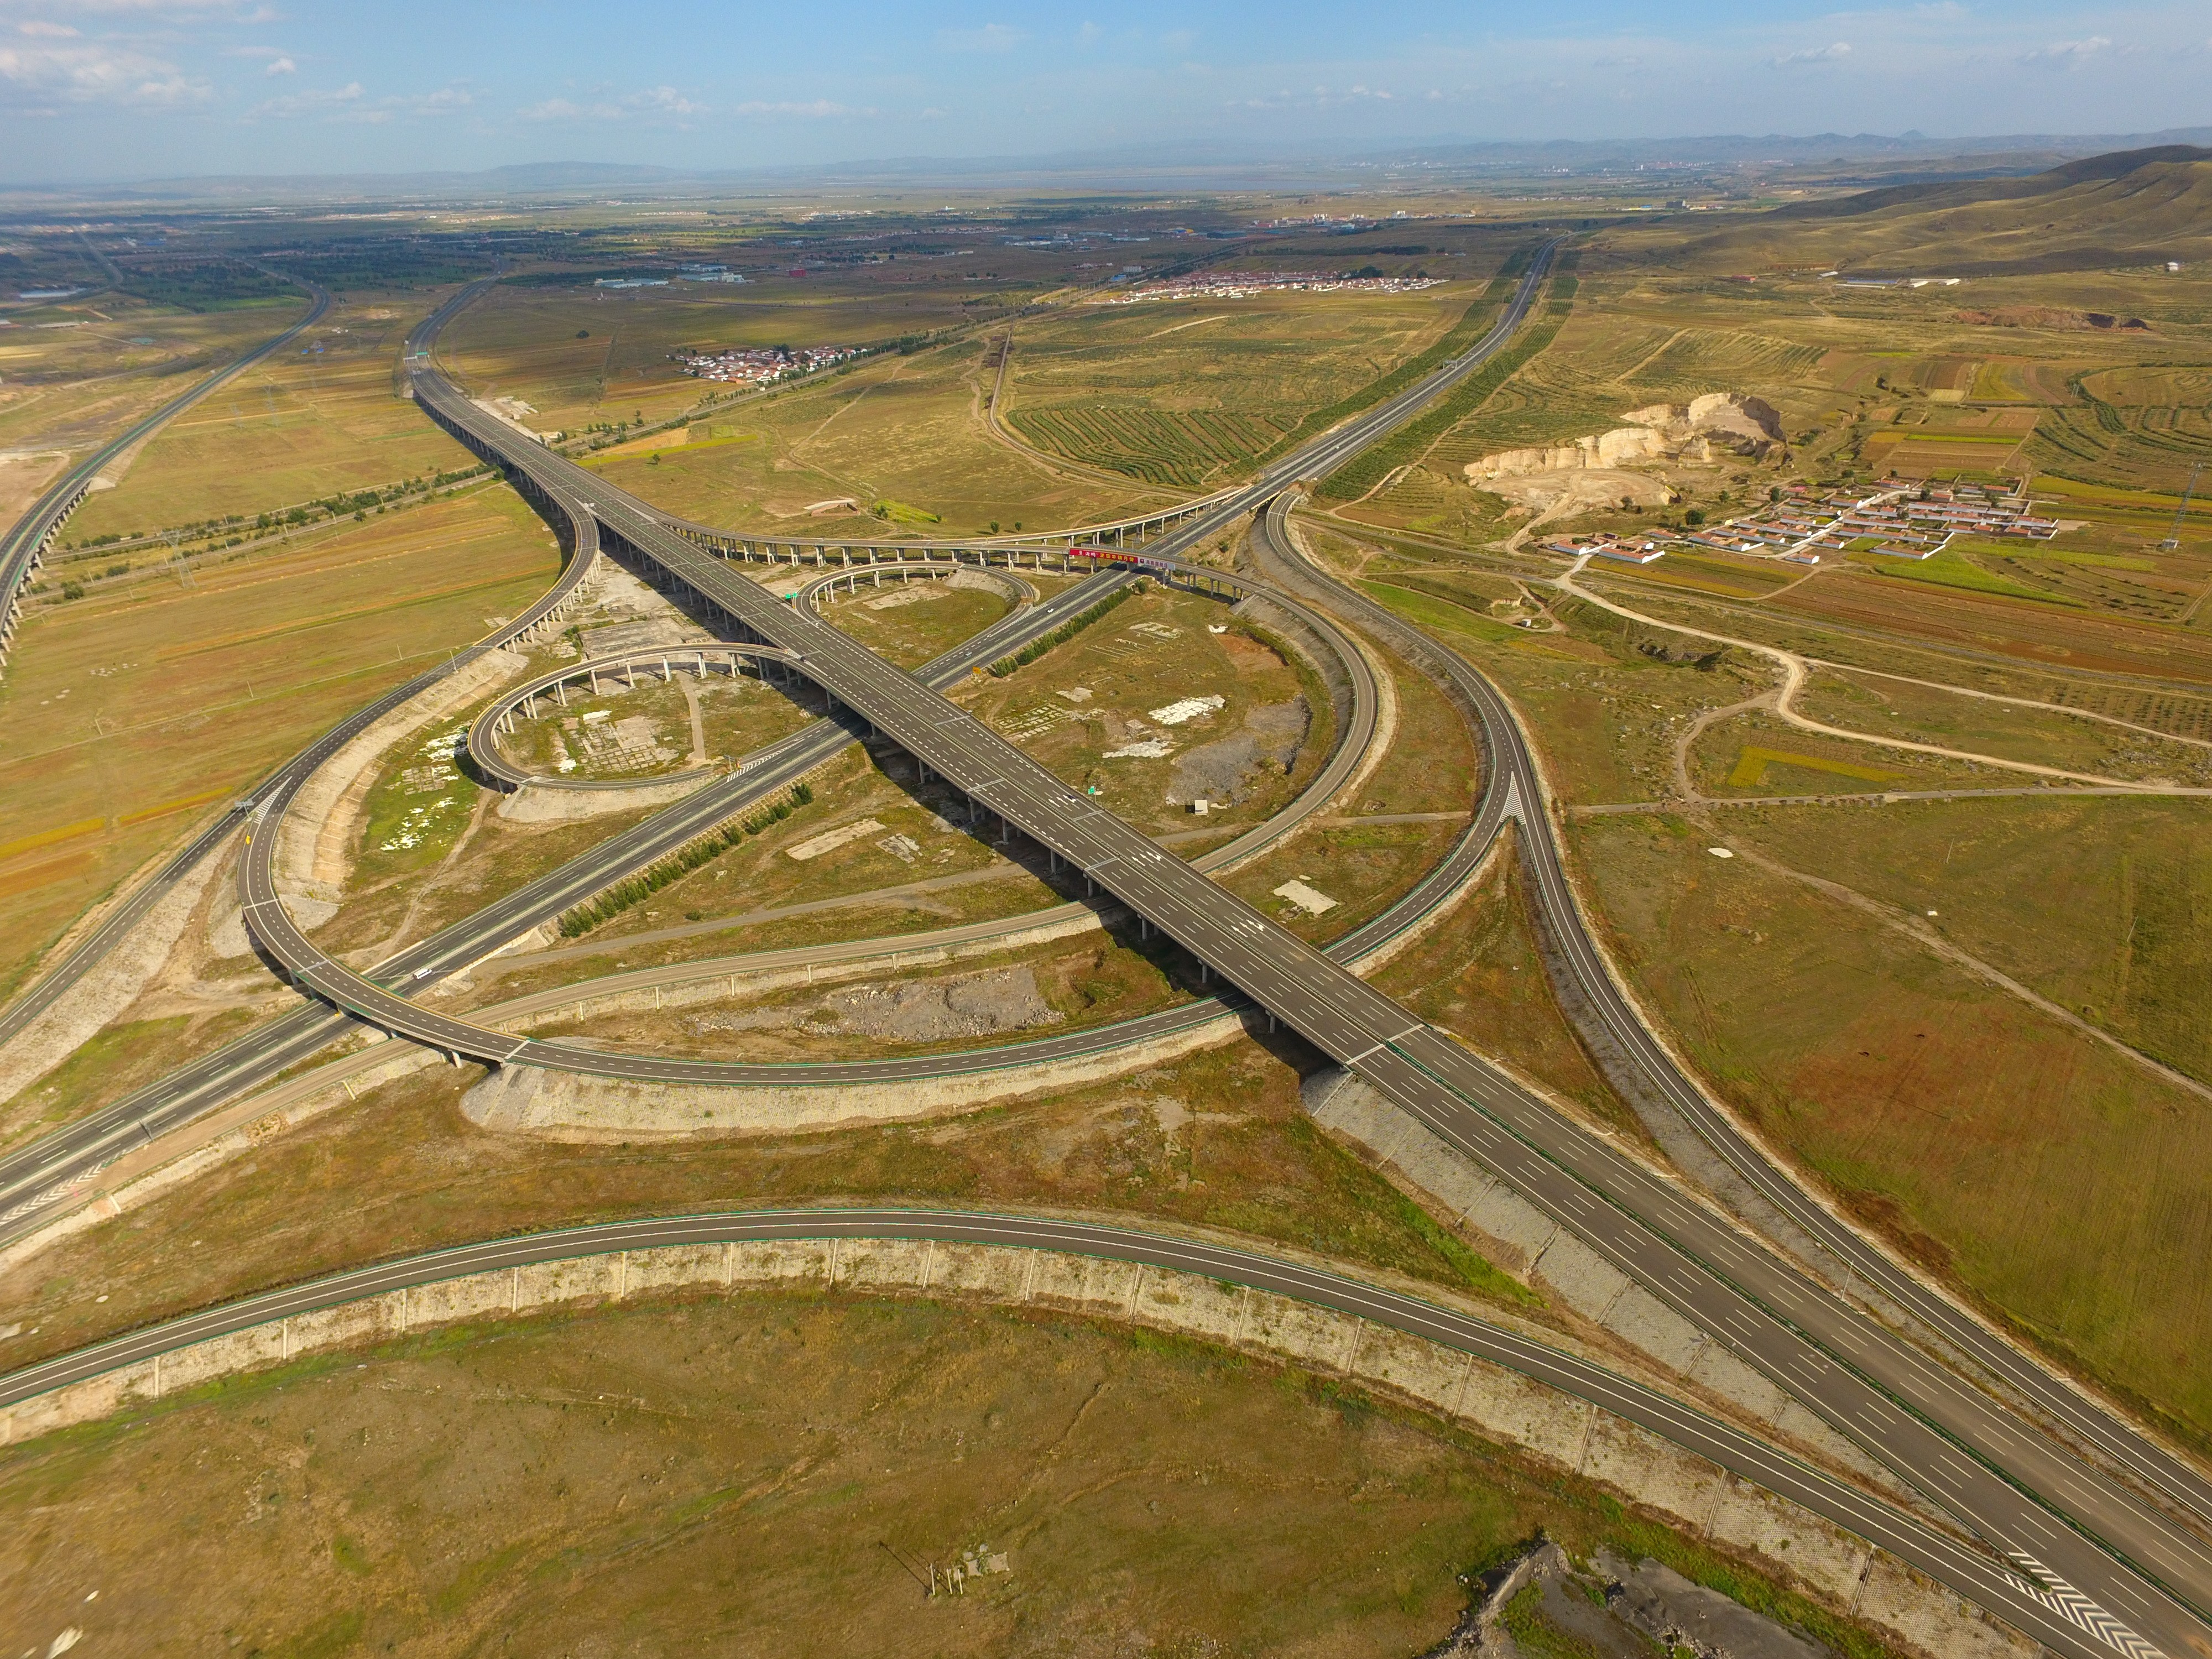 5内蒙古京新高速公路，是国家高速公路网的重要通道，战略地位突出、维稳戍边意义重大，是威尼斯wns·8885566首次在内蒙古承建高速公路，2016年建成通车.jpg